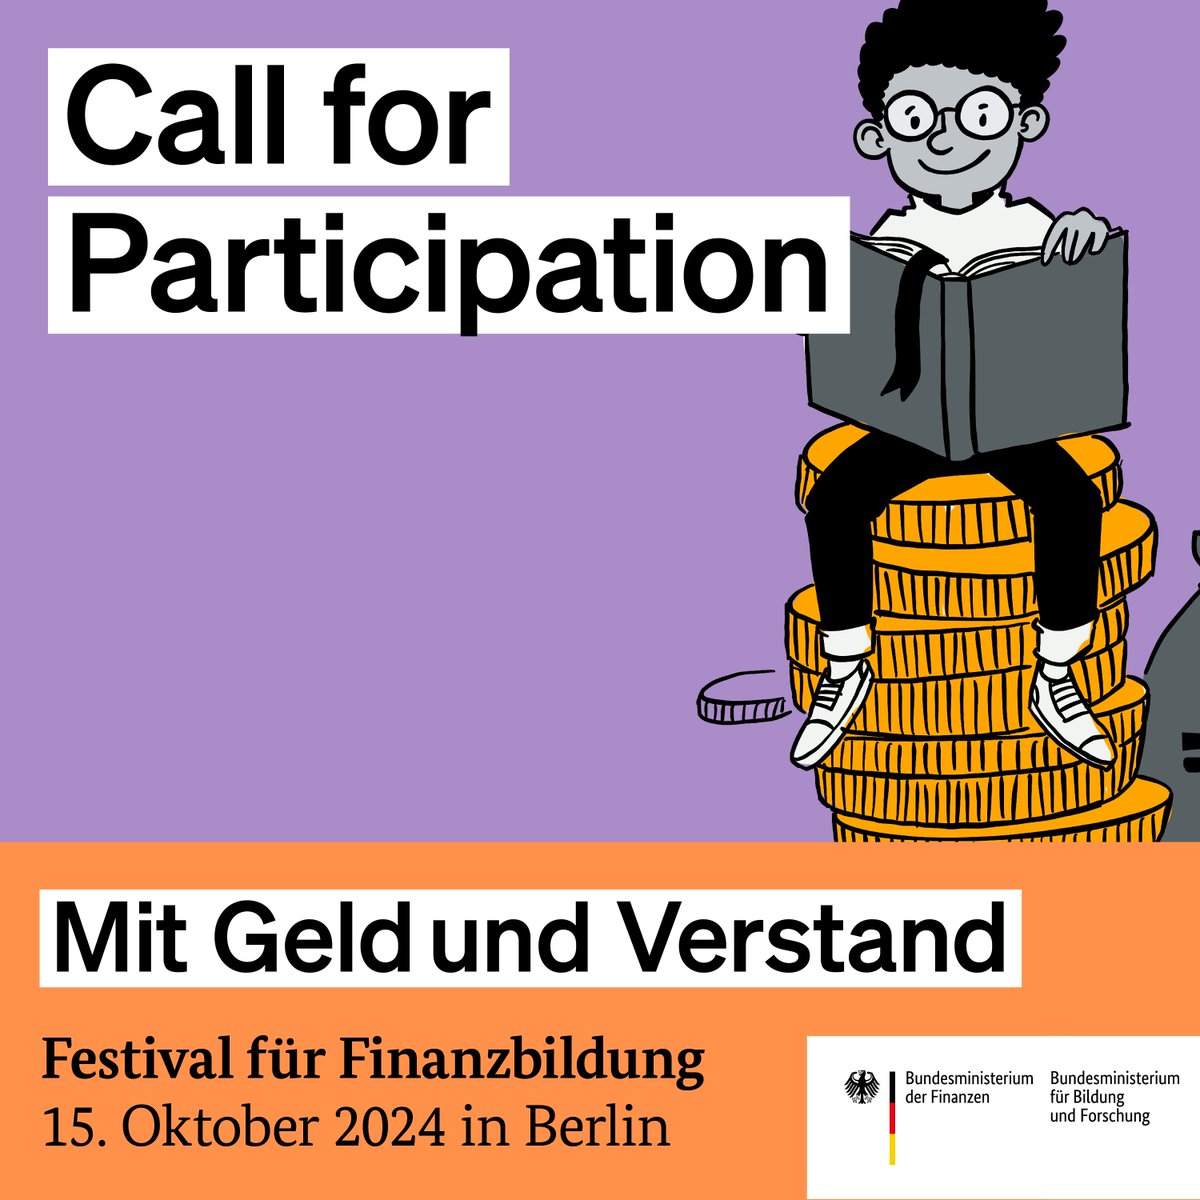 Am 15. Oktober 2024 findet das Festival für Finanzbildung „Mit Geld und Verstand“ in Berlin statt - ein kostenloser Fachkongress rund um das Thema #FinanzielleBildung. Dafür suchen wir Sie! Bewerben Sie sich bis zum 19. Juni auf einen Platz im Programm➡️ mitgeldundverstand.de/festival